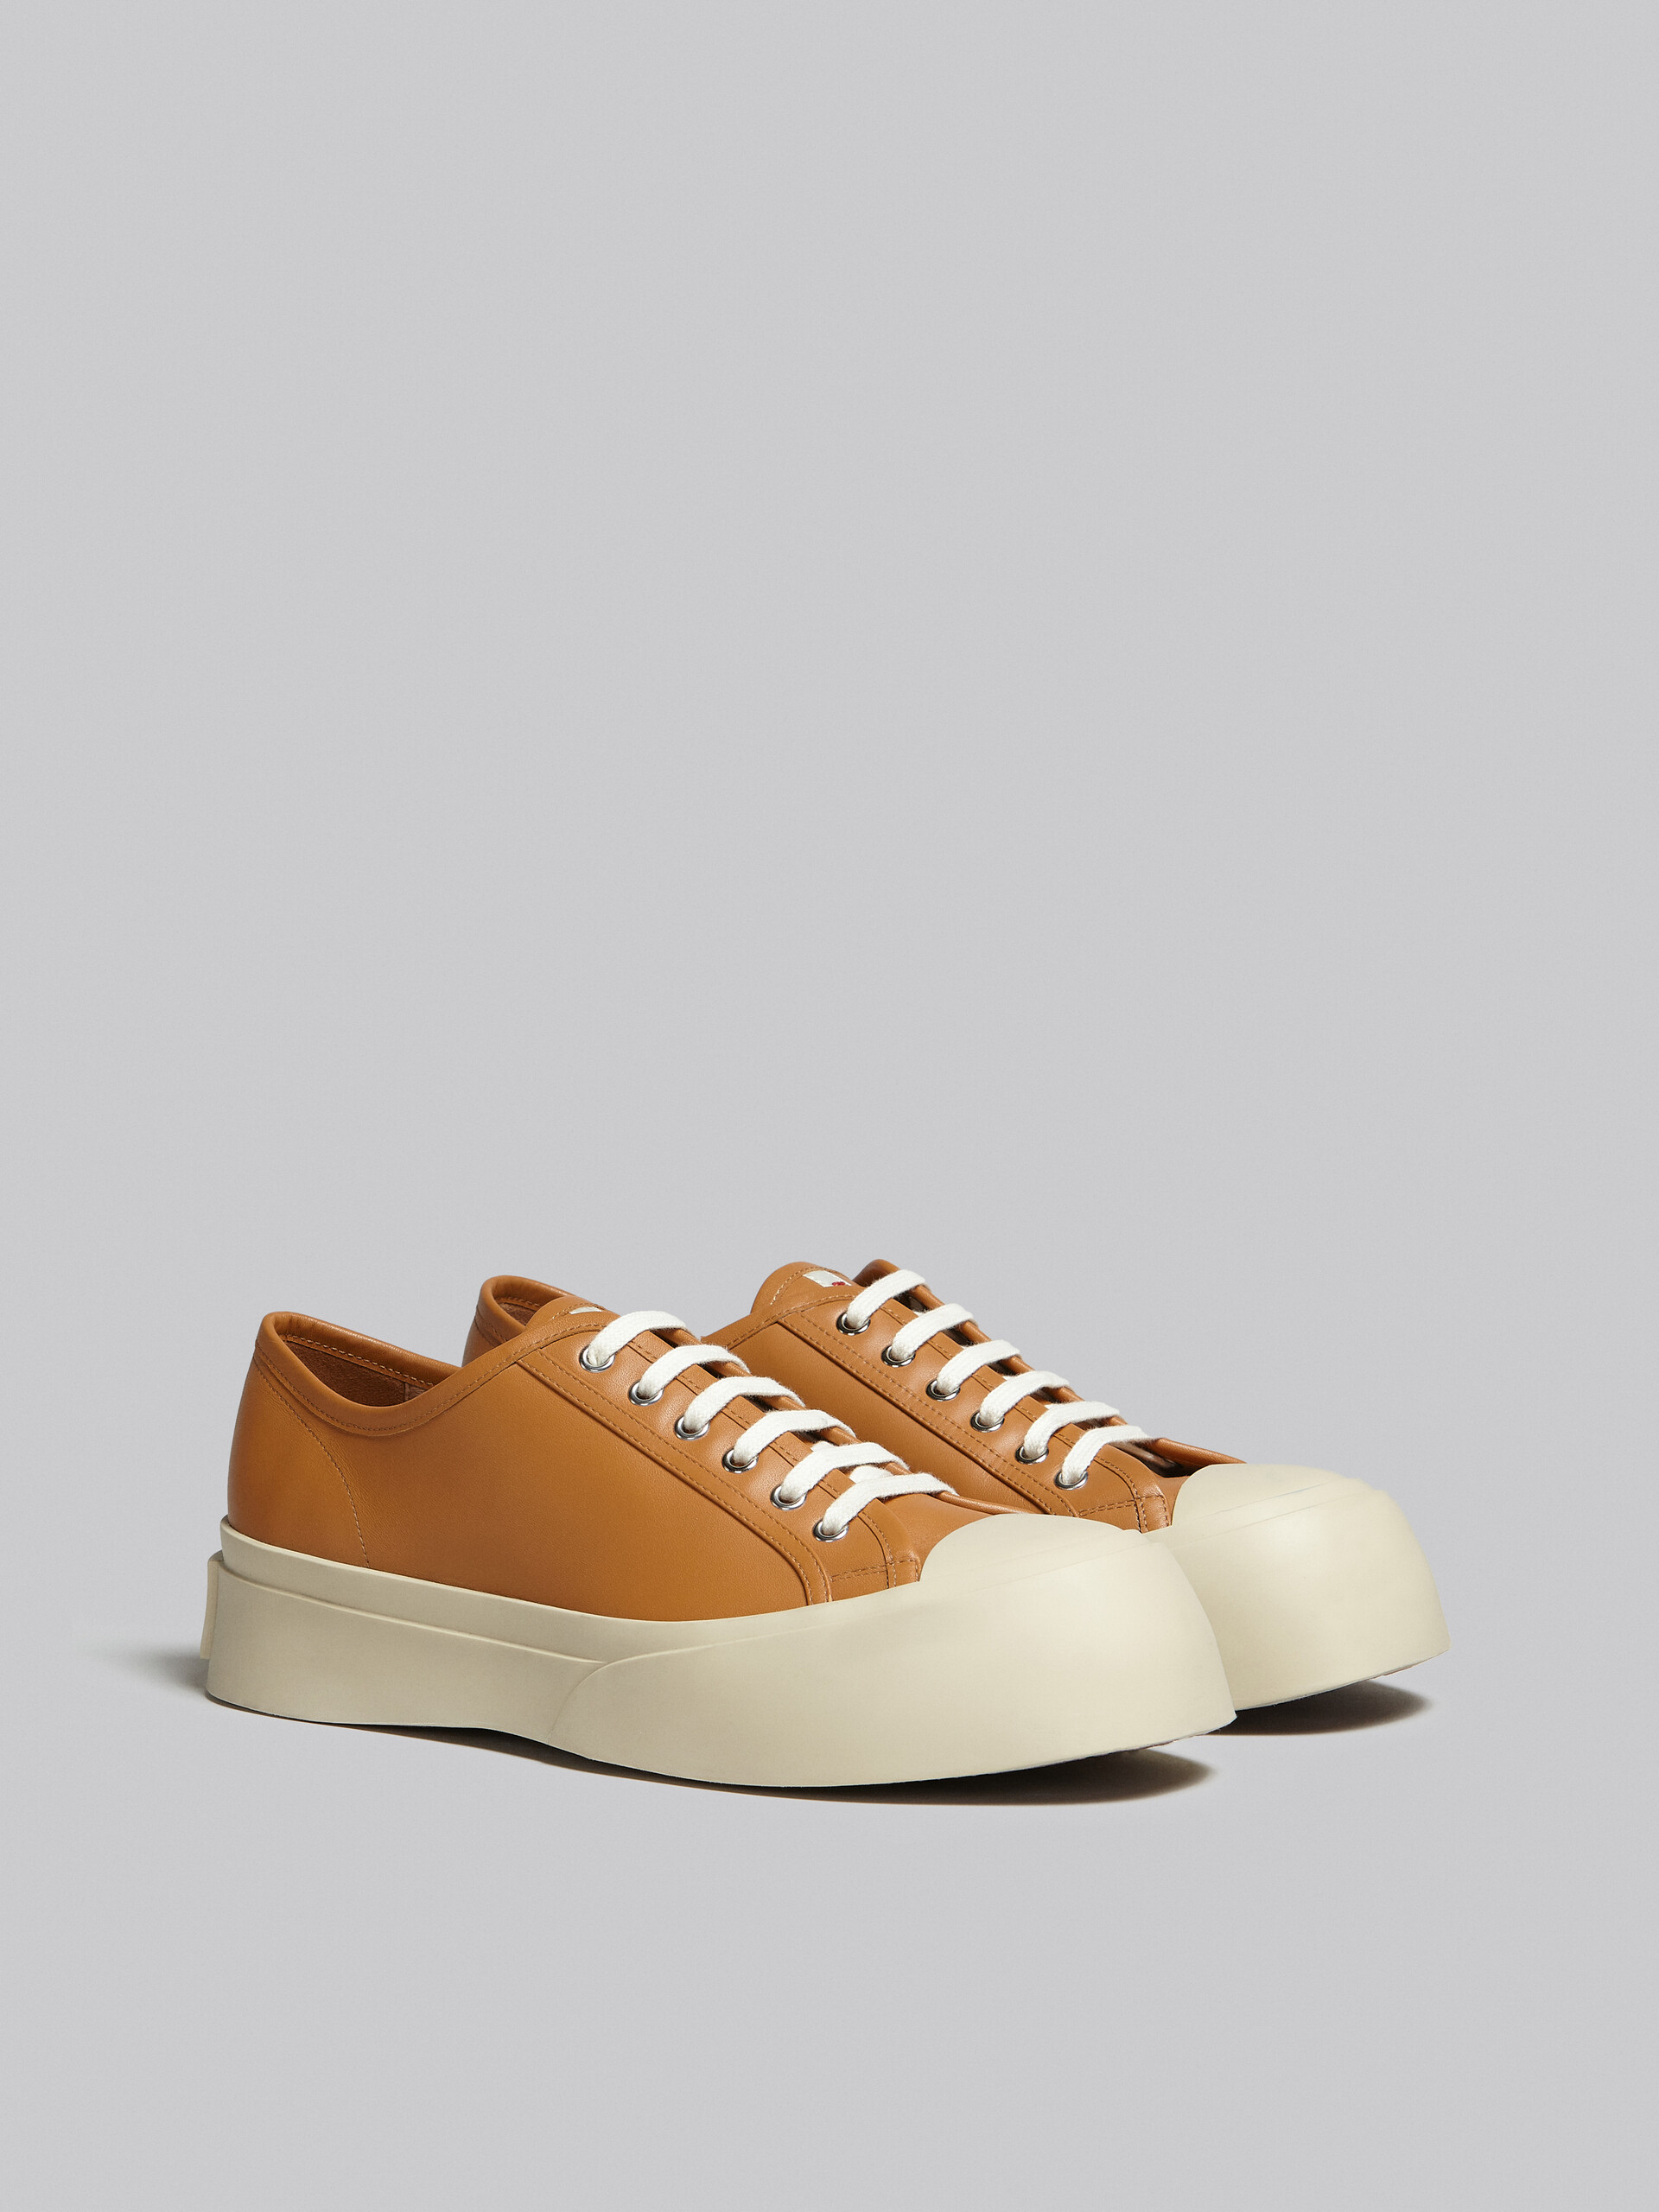 Zapatilla Pablo de napa marrón - Sneakers - Image 2